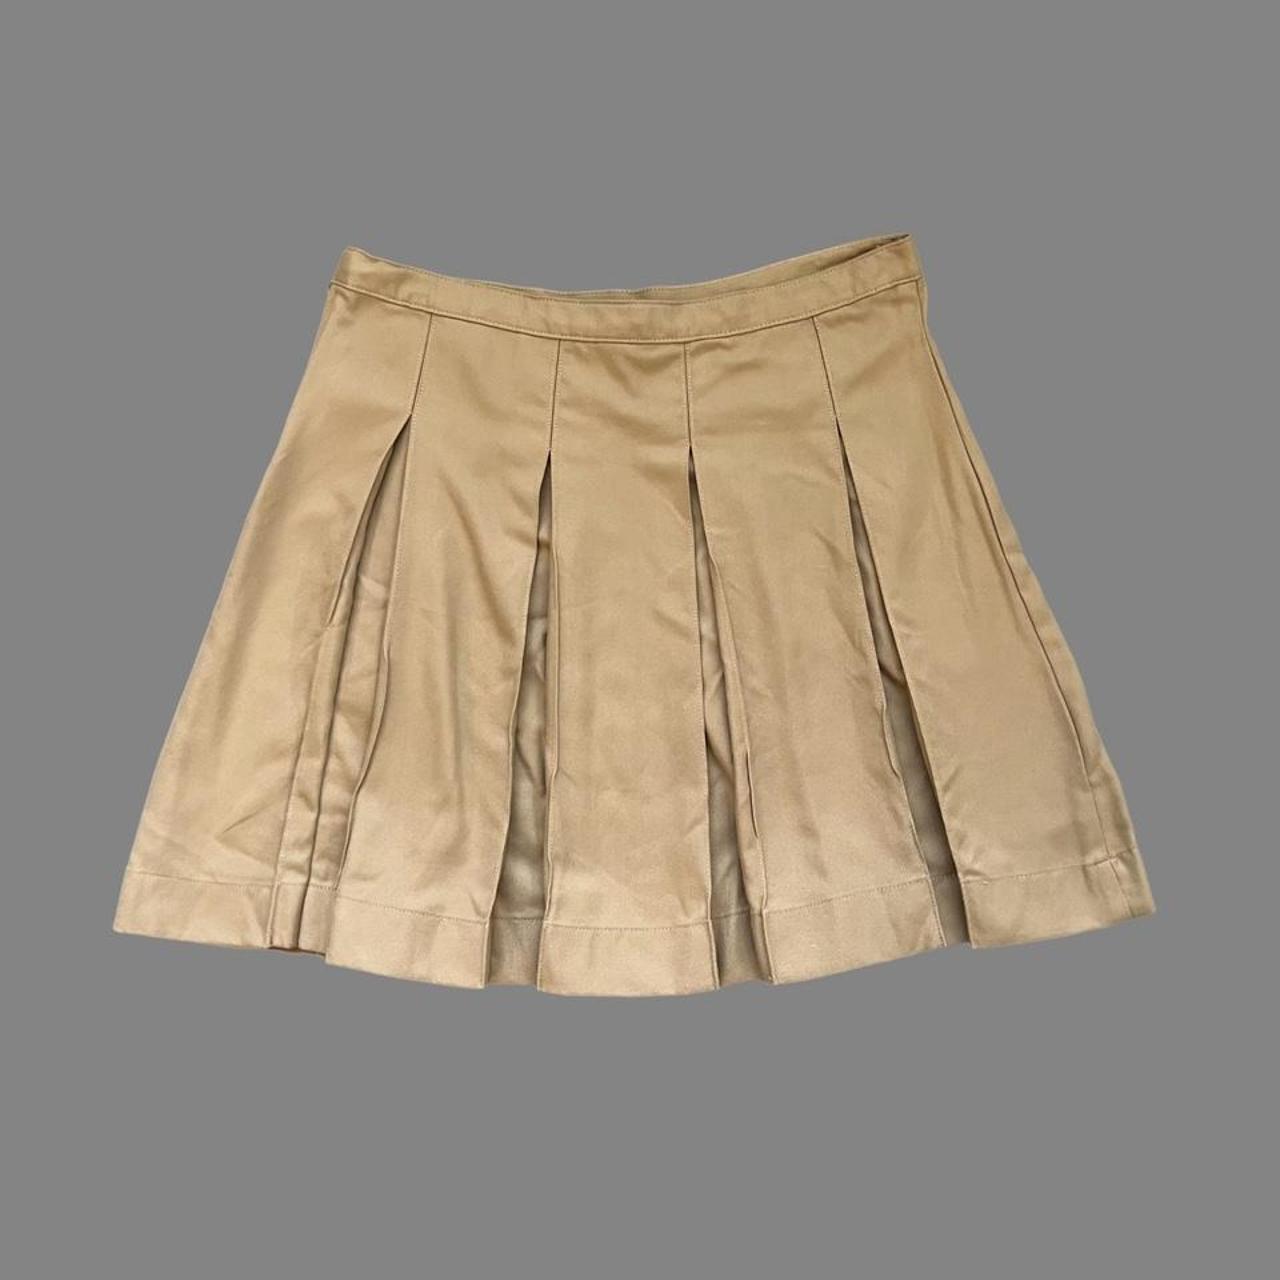 Khaki school girl skirt. Pleats are sewn in. Side... - Depop